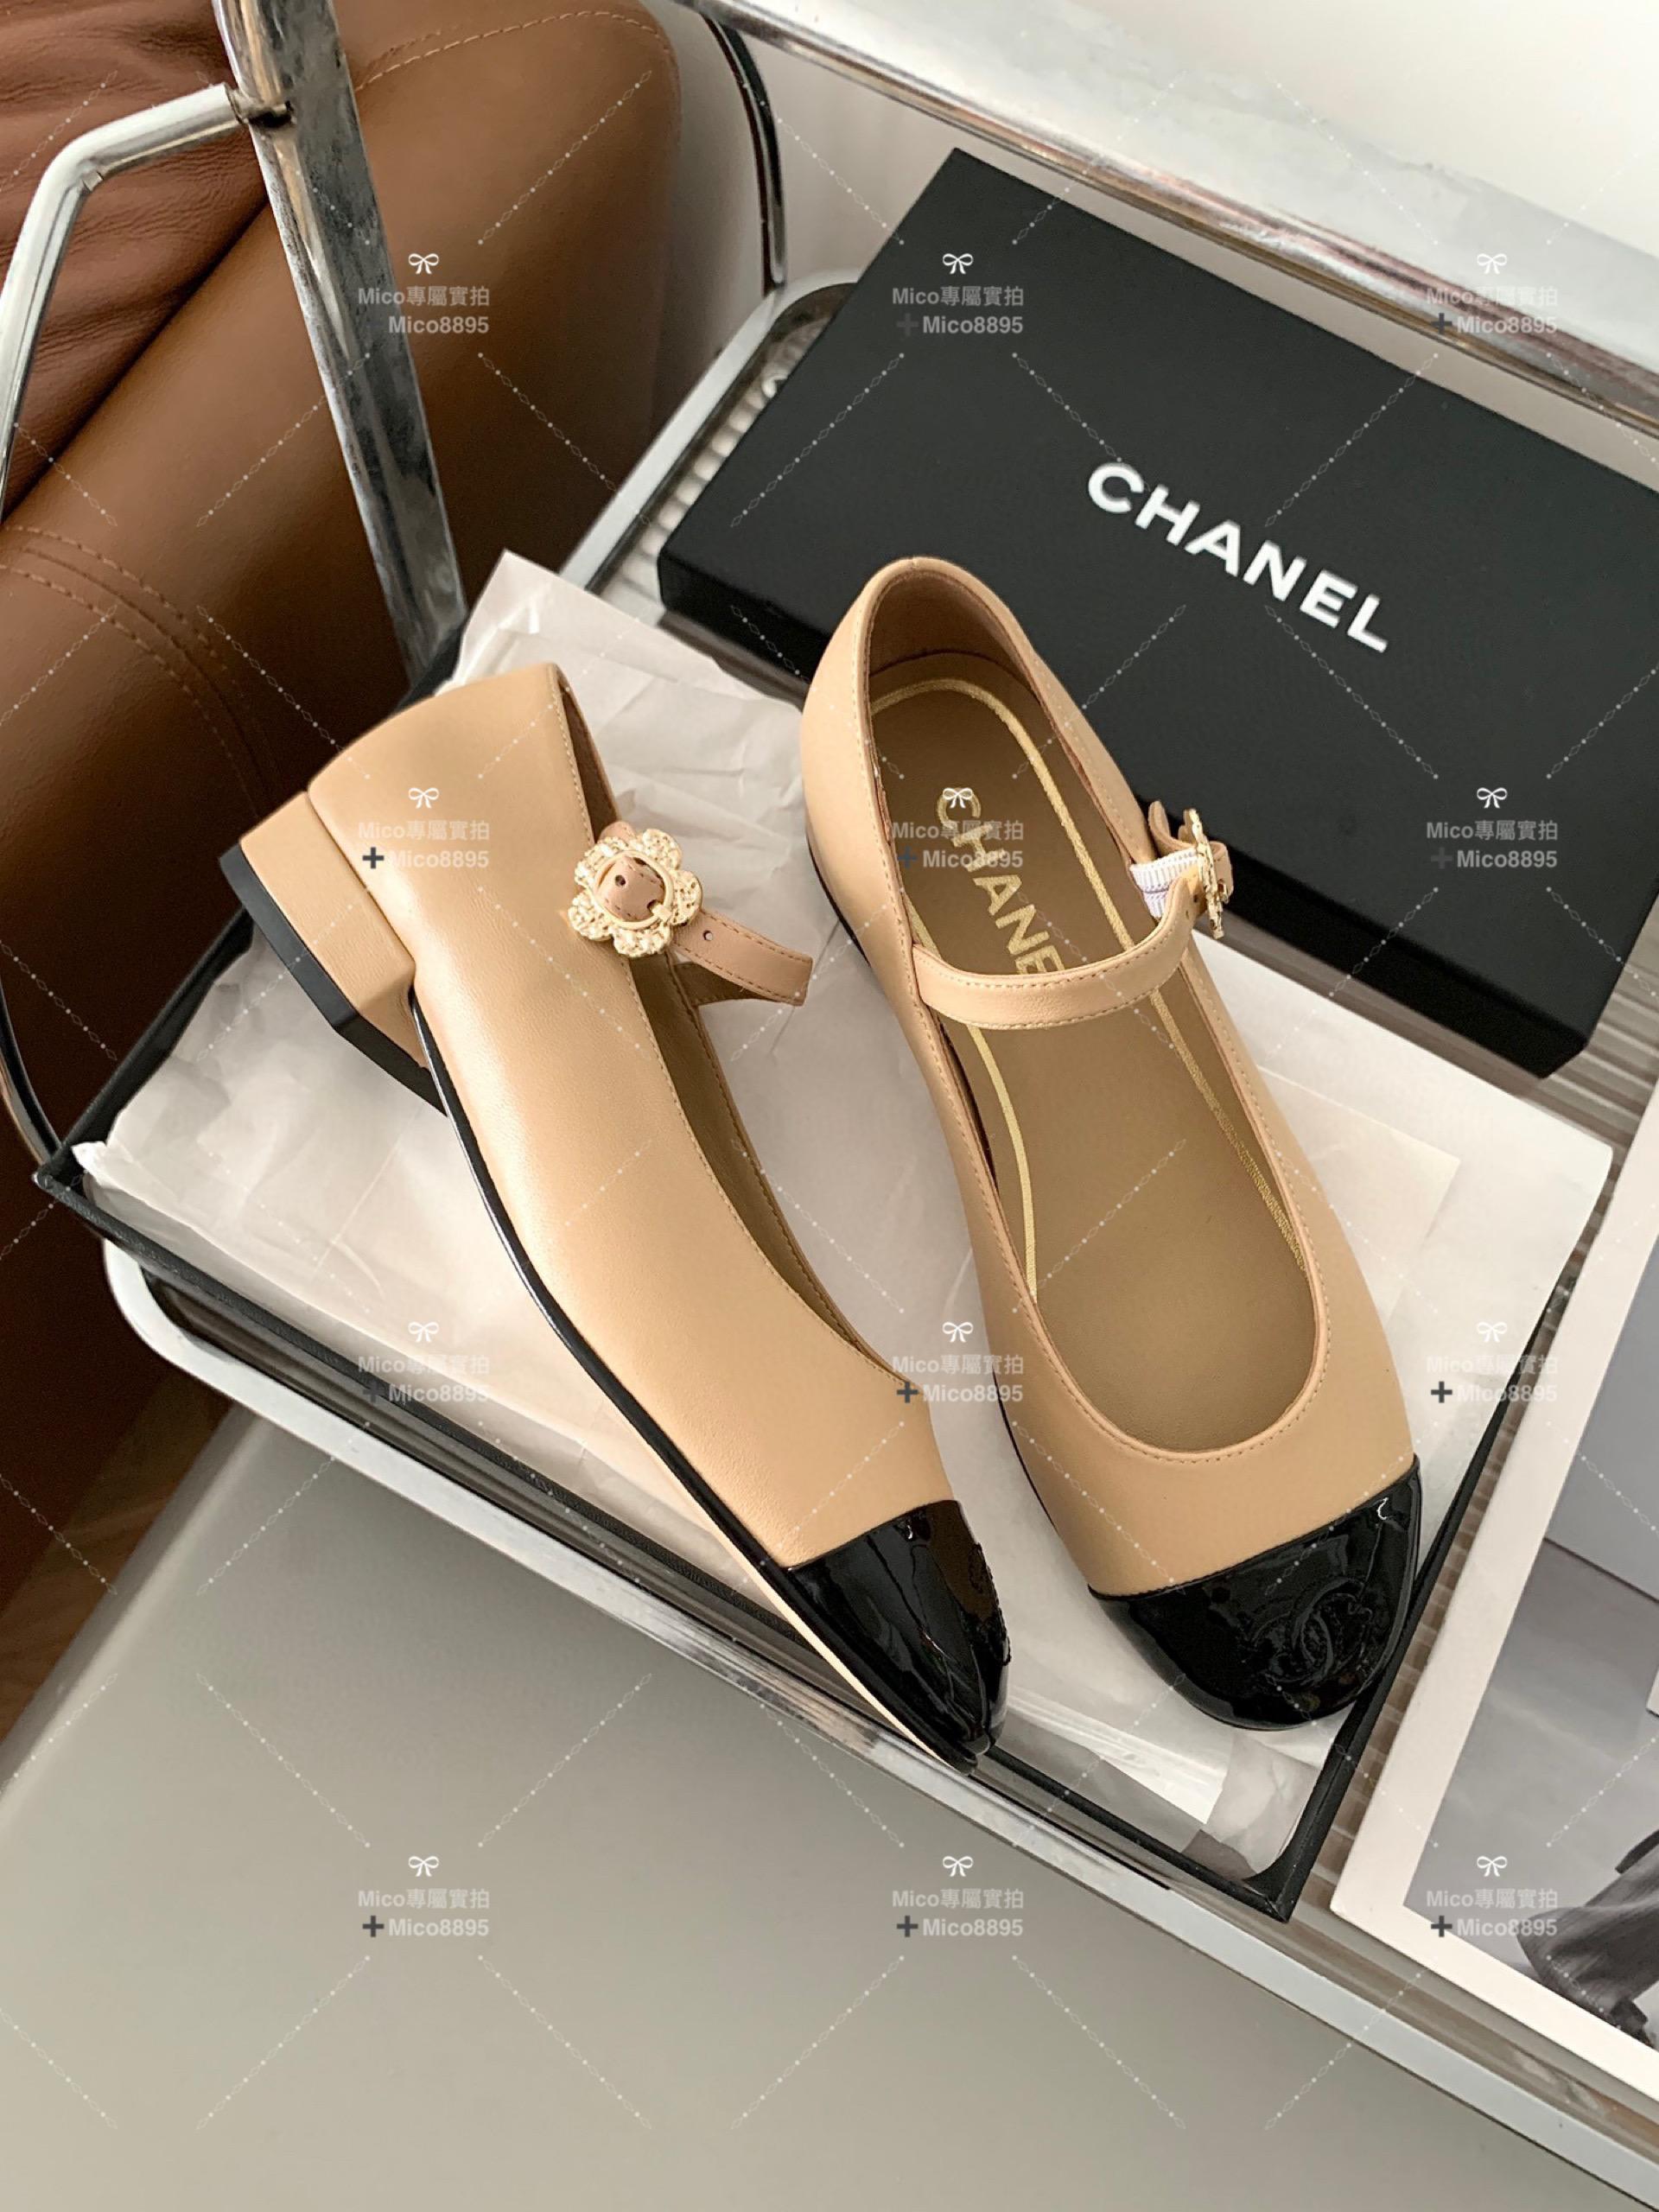 Chanel 杏色小牛皮 側邊小花釦 瑪莉珍平底鞋 繫帶鞋 娃娃鞋